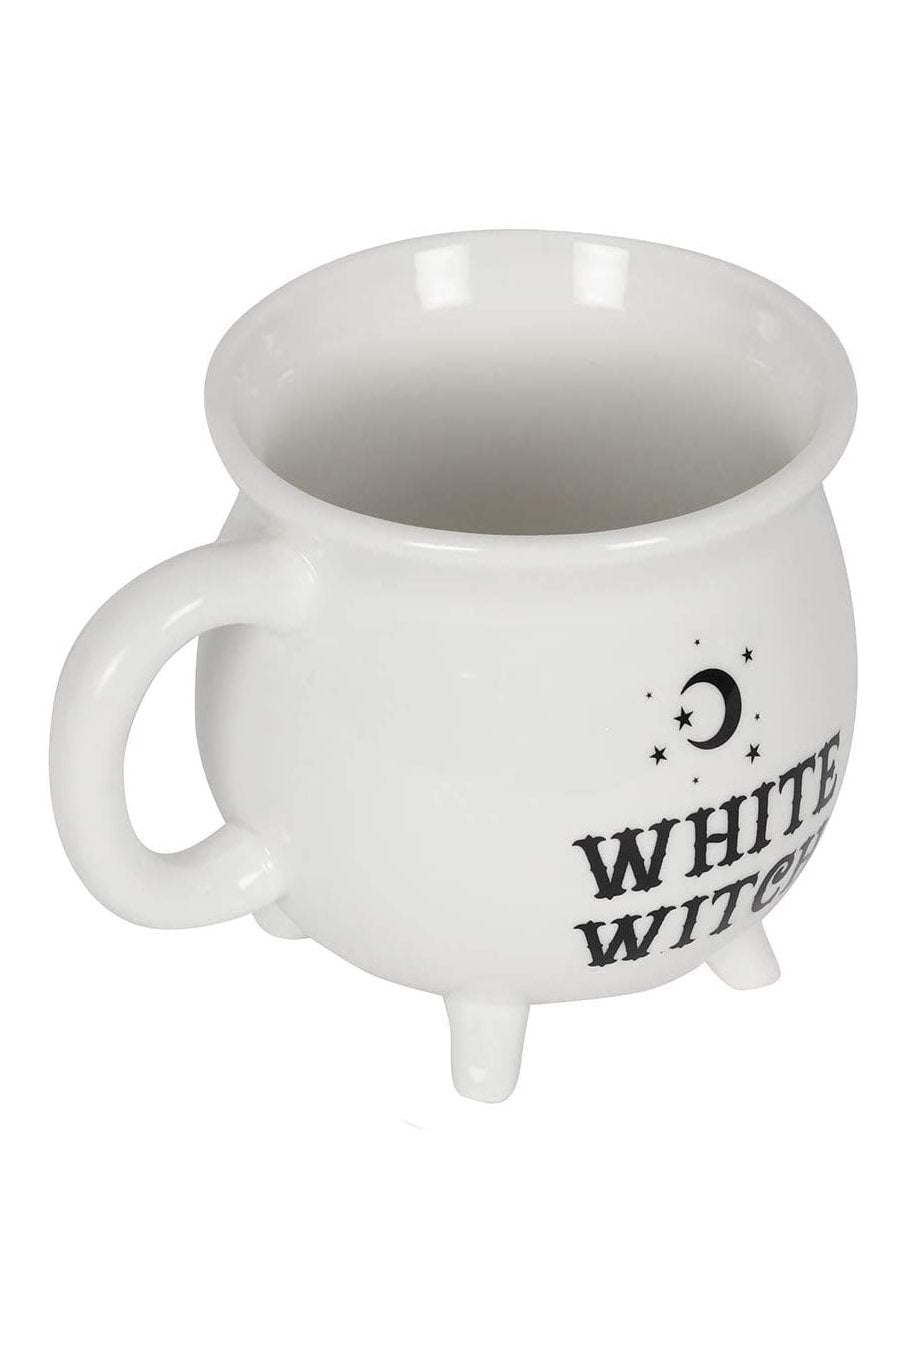 White Witch Cauldron Mug